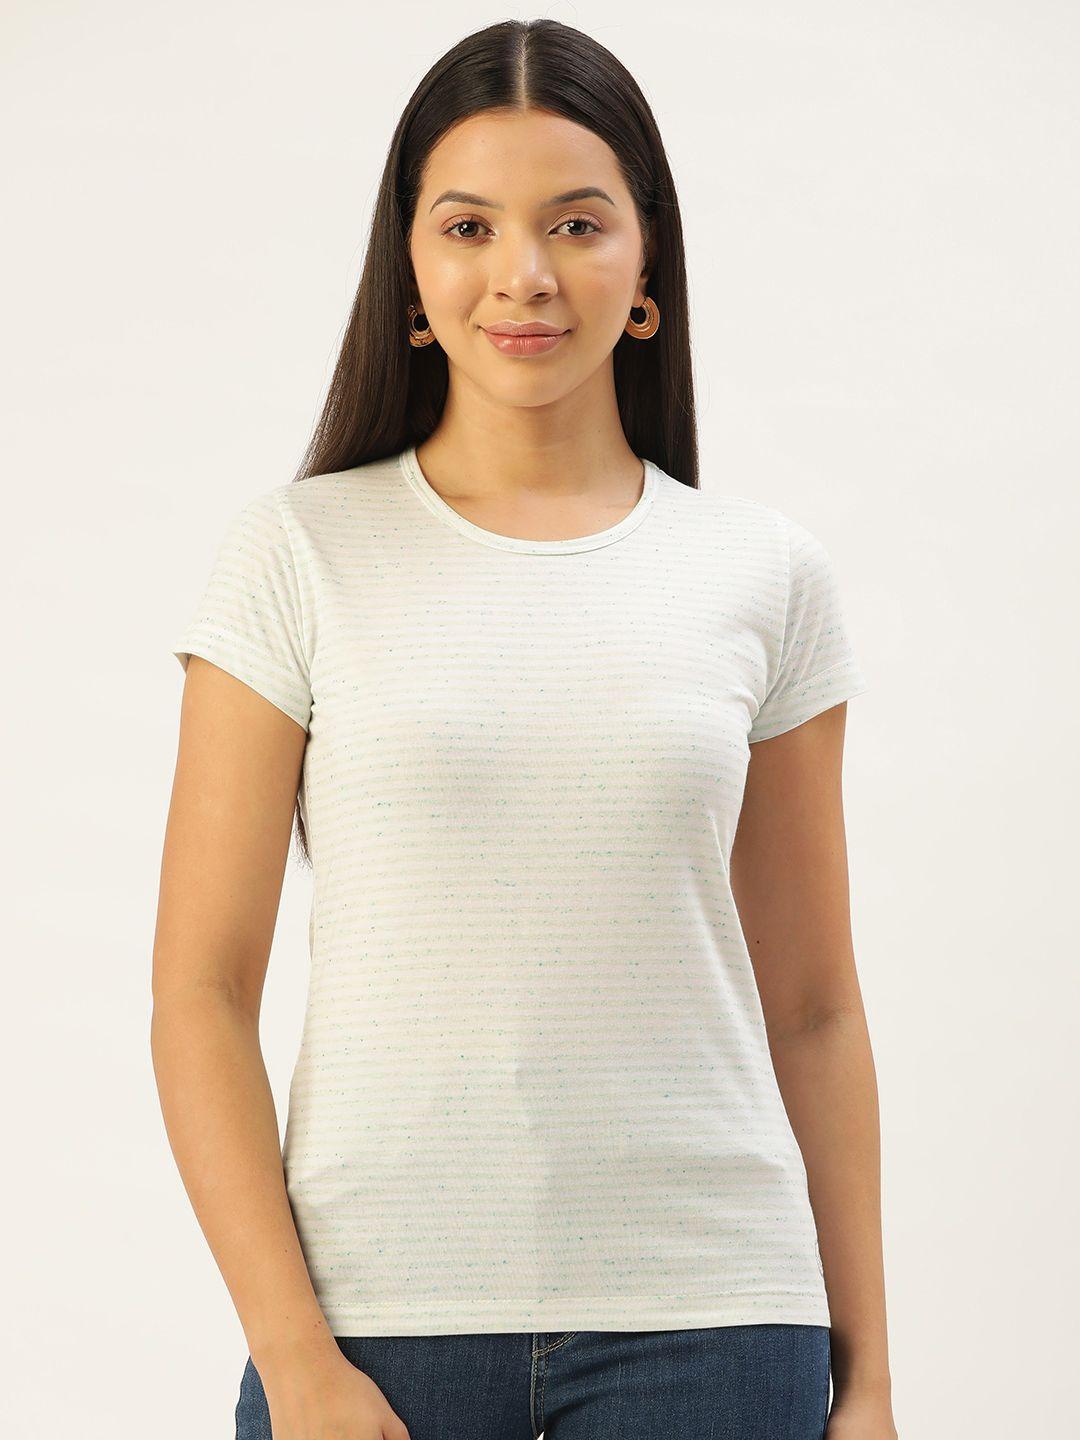 femea horizontally striped t-shirt